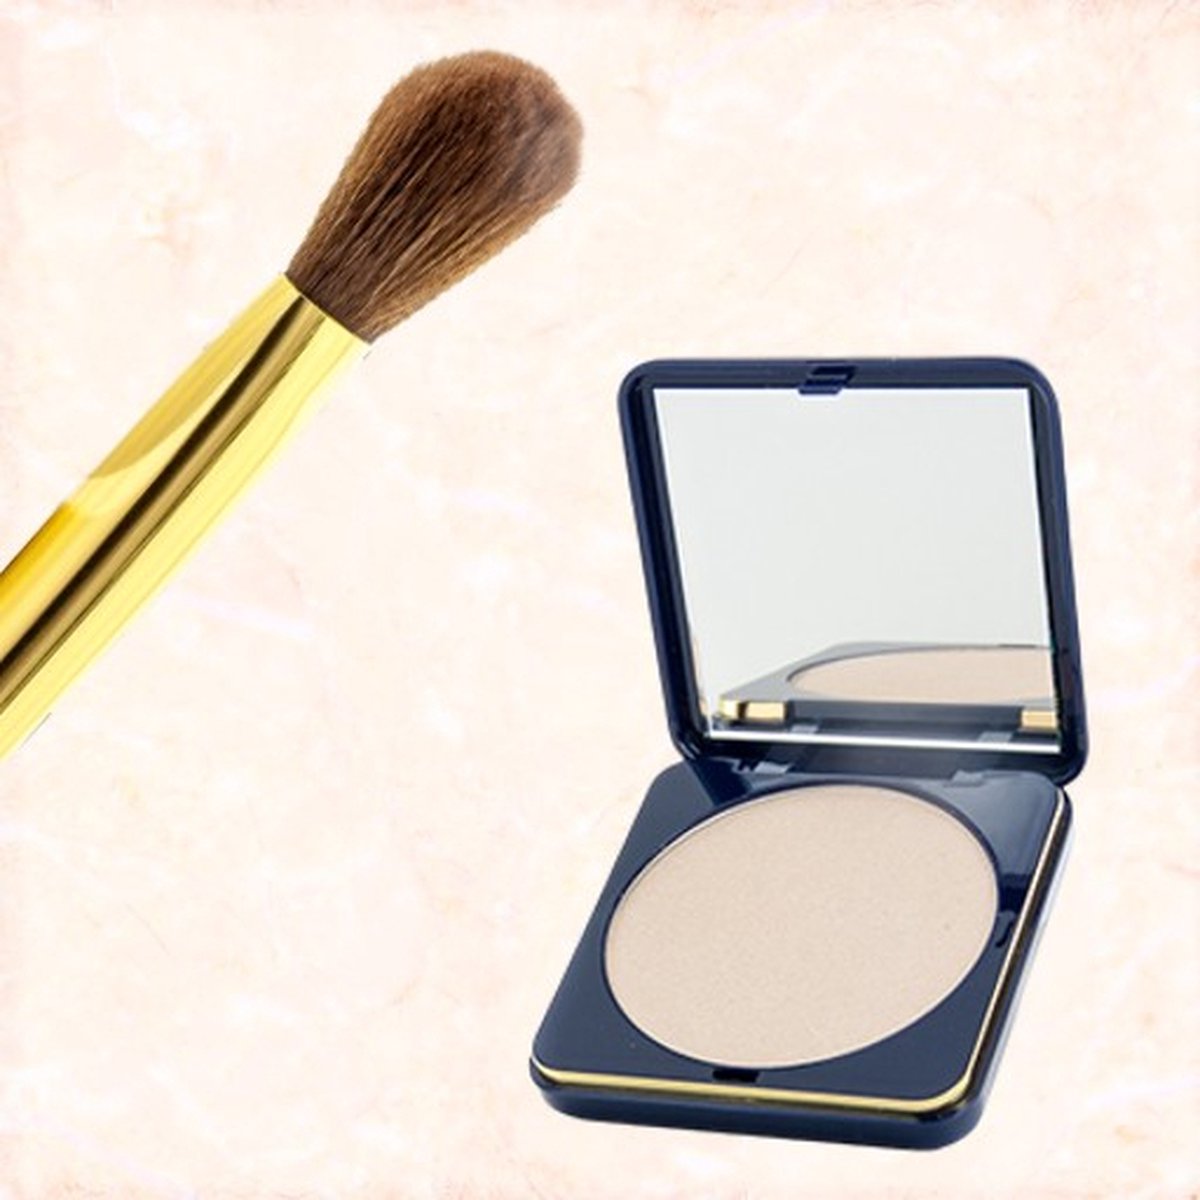 Bolero Cosmetics - Make-up giftset - Highlighter zilver inclusief bijbehorende highlighter kwast - Zilveren shaper